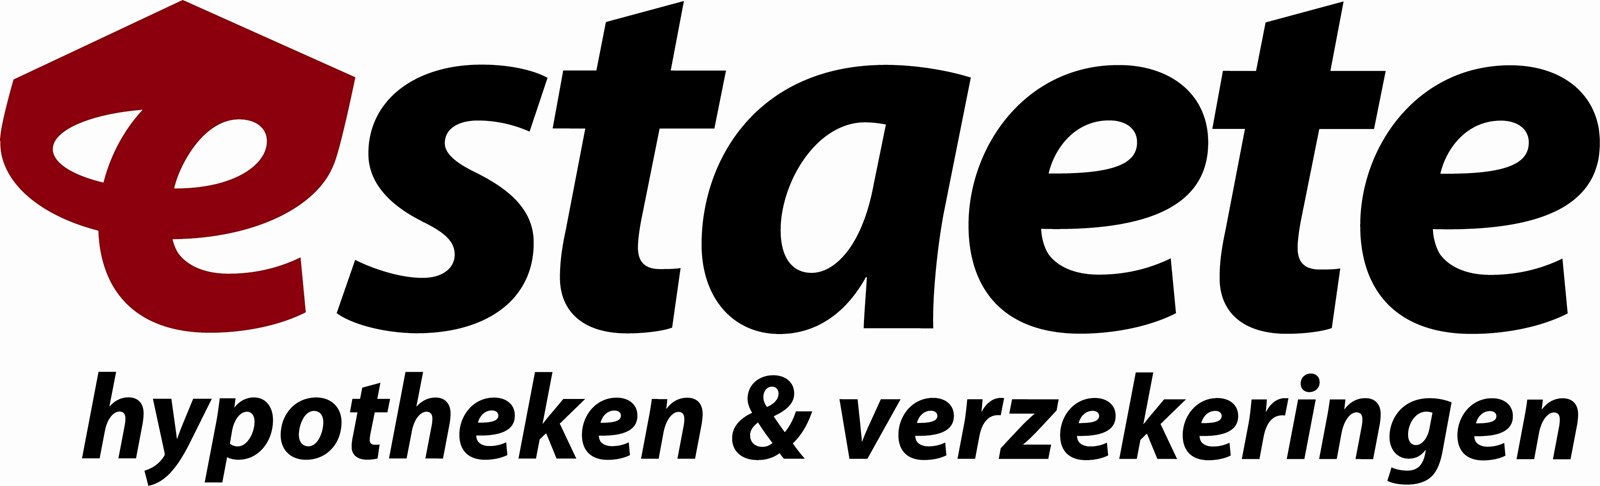 Logo van Estaete hypotheken & verzekeringen